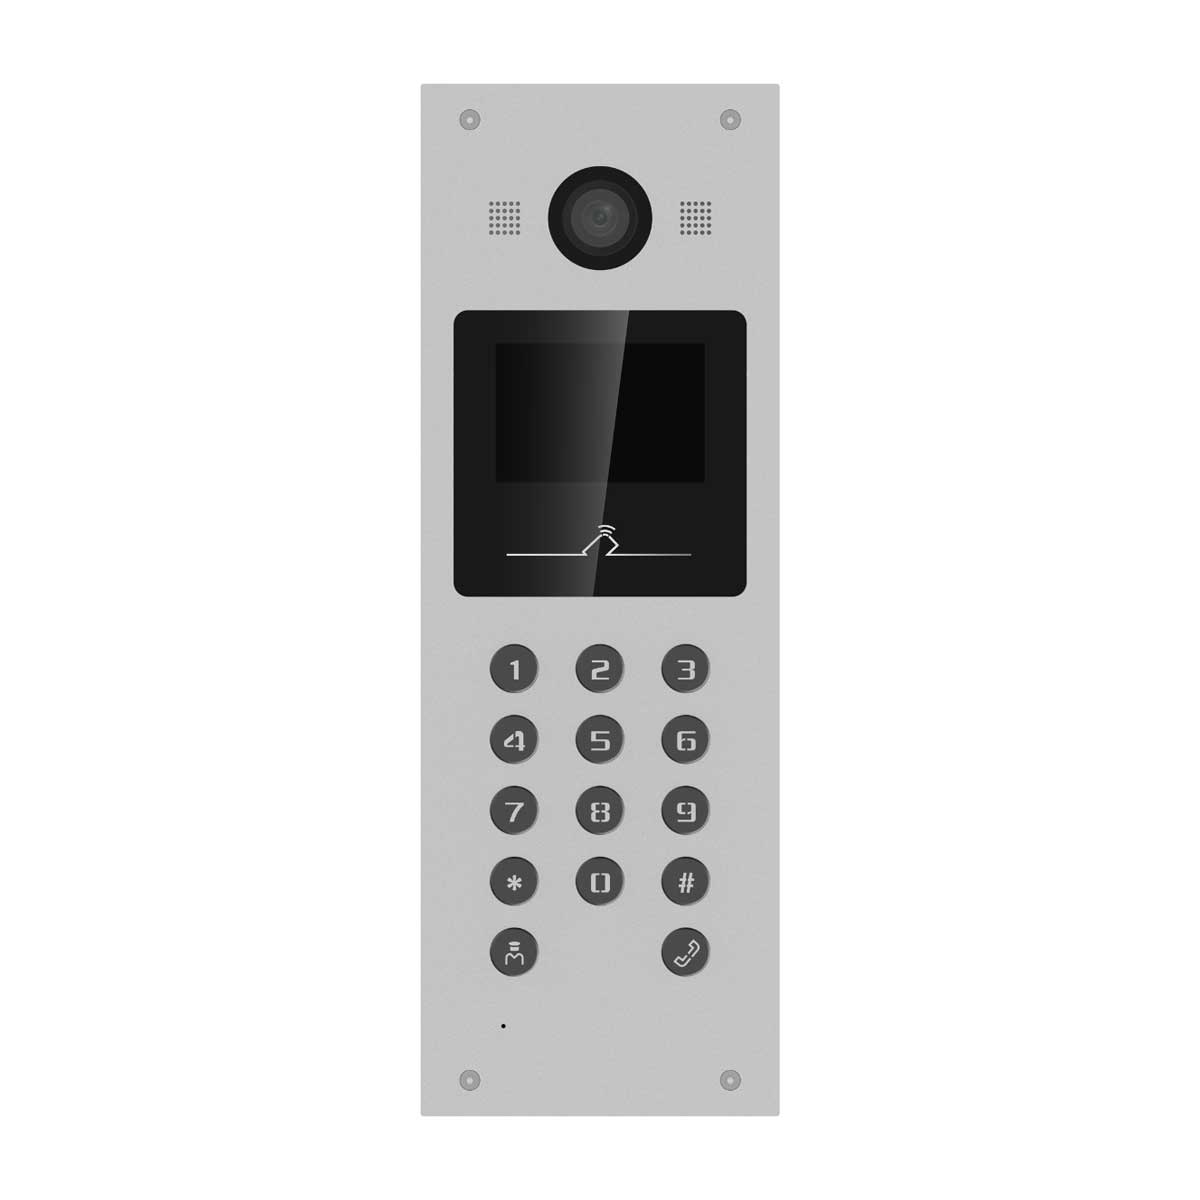 Camera chuông cửa chung cư trung tâm IP 2MP HD Hikvision DS-KD3003-E6 LCD TFT 3.5inch, Mifare card